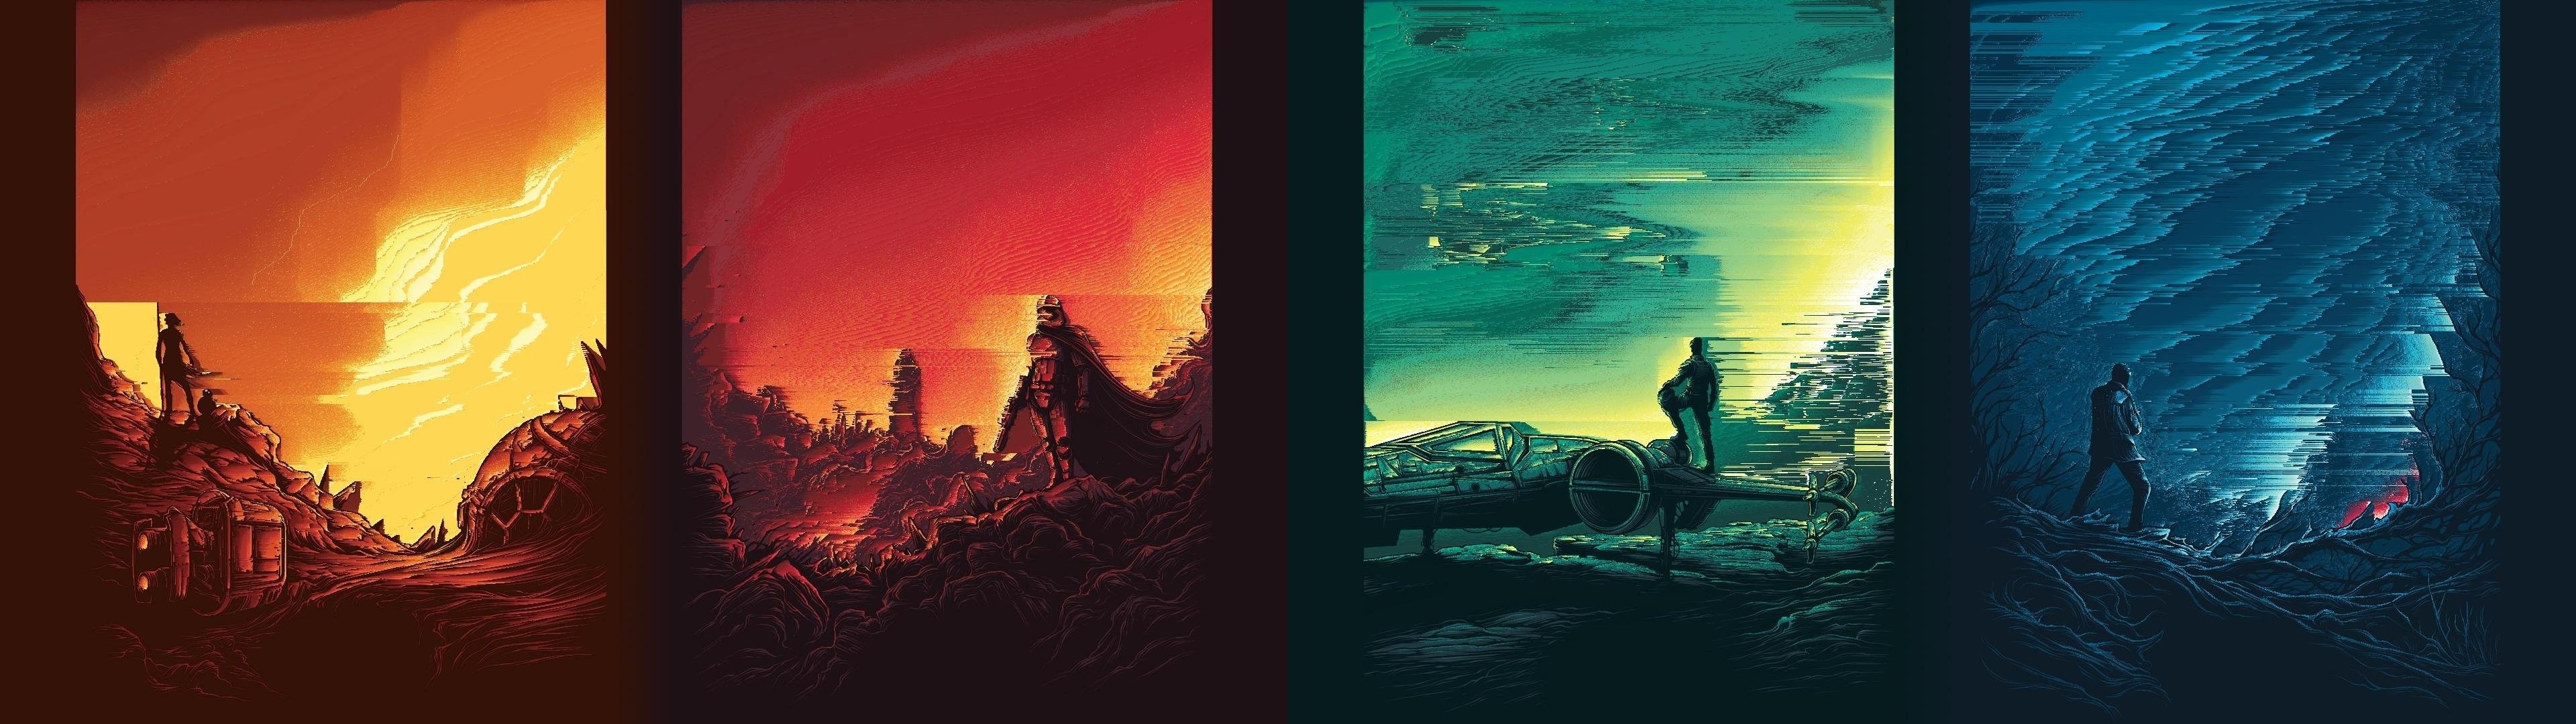 Star Wars Dual Screen Wallpapers - Wallpaper Cave